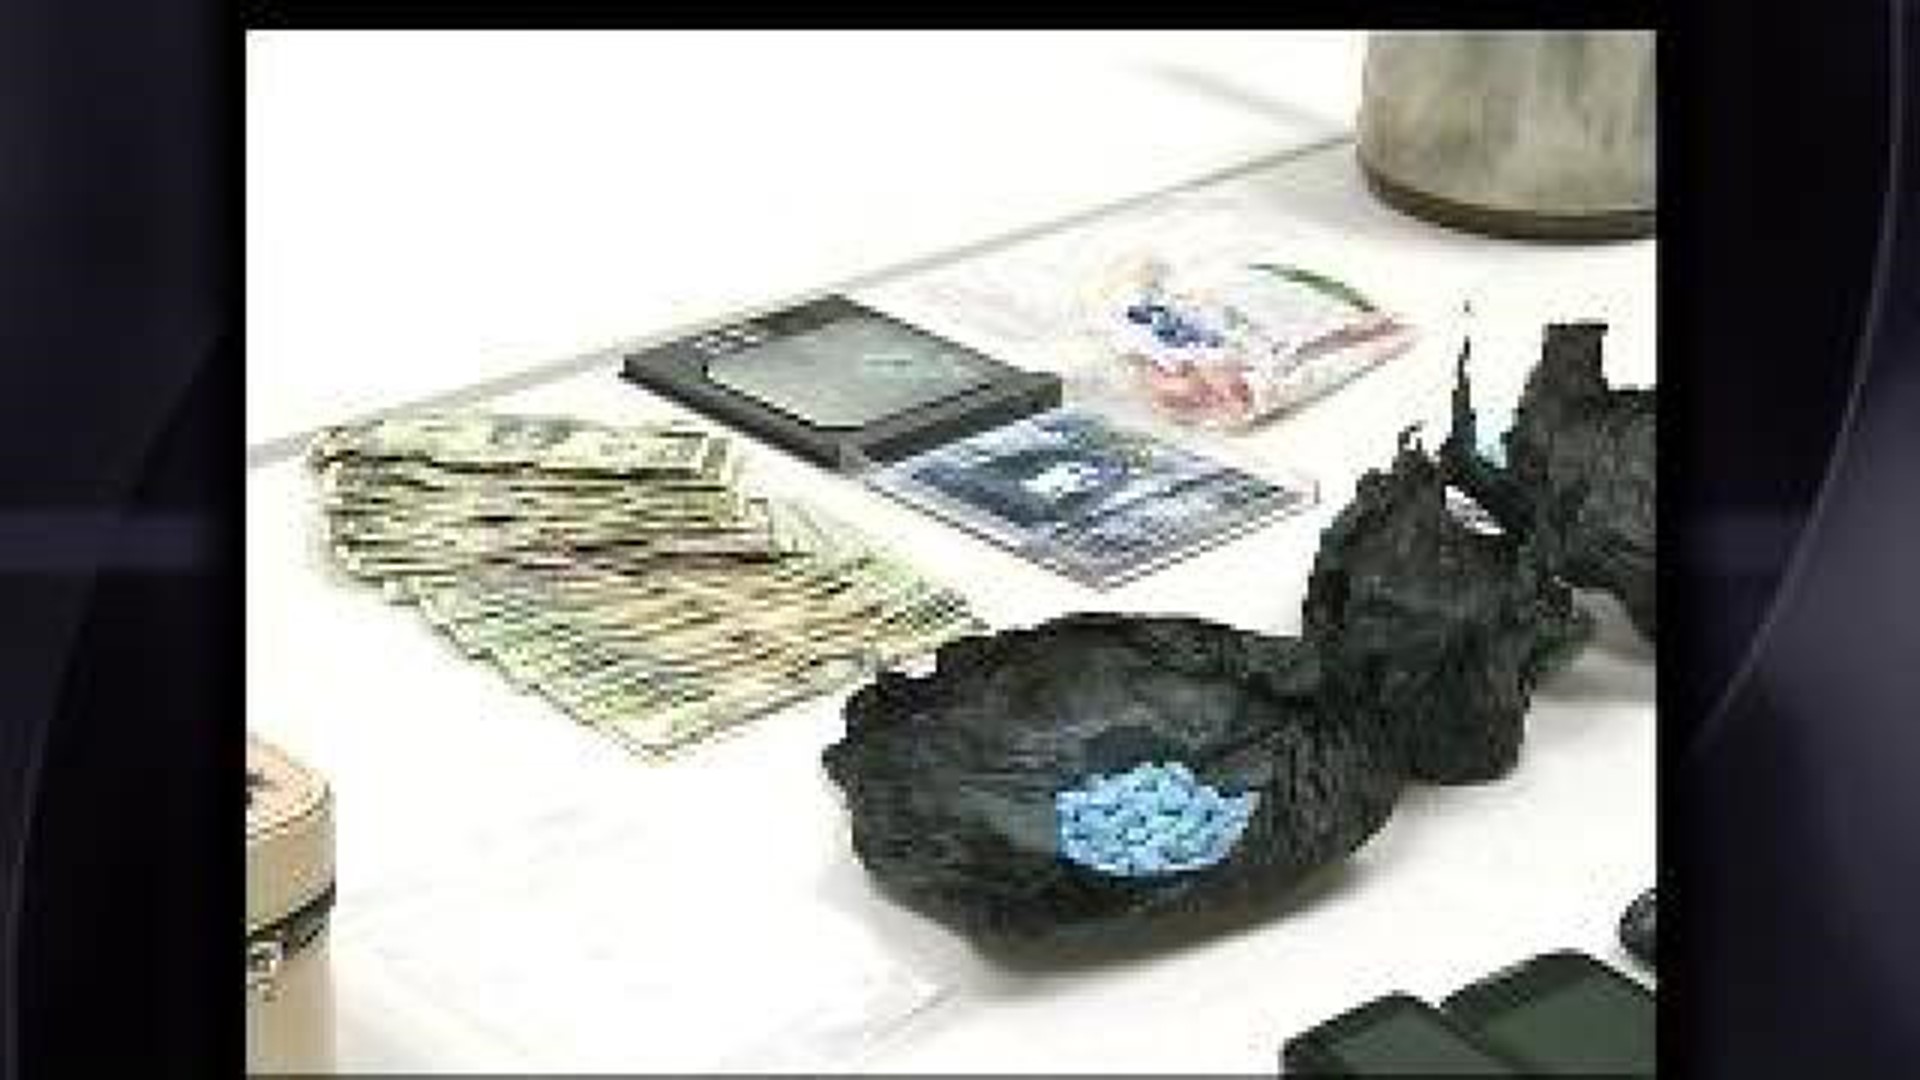 Black Tar Heroin Arrests